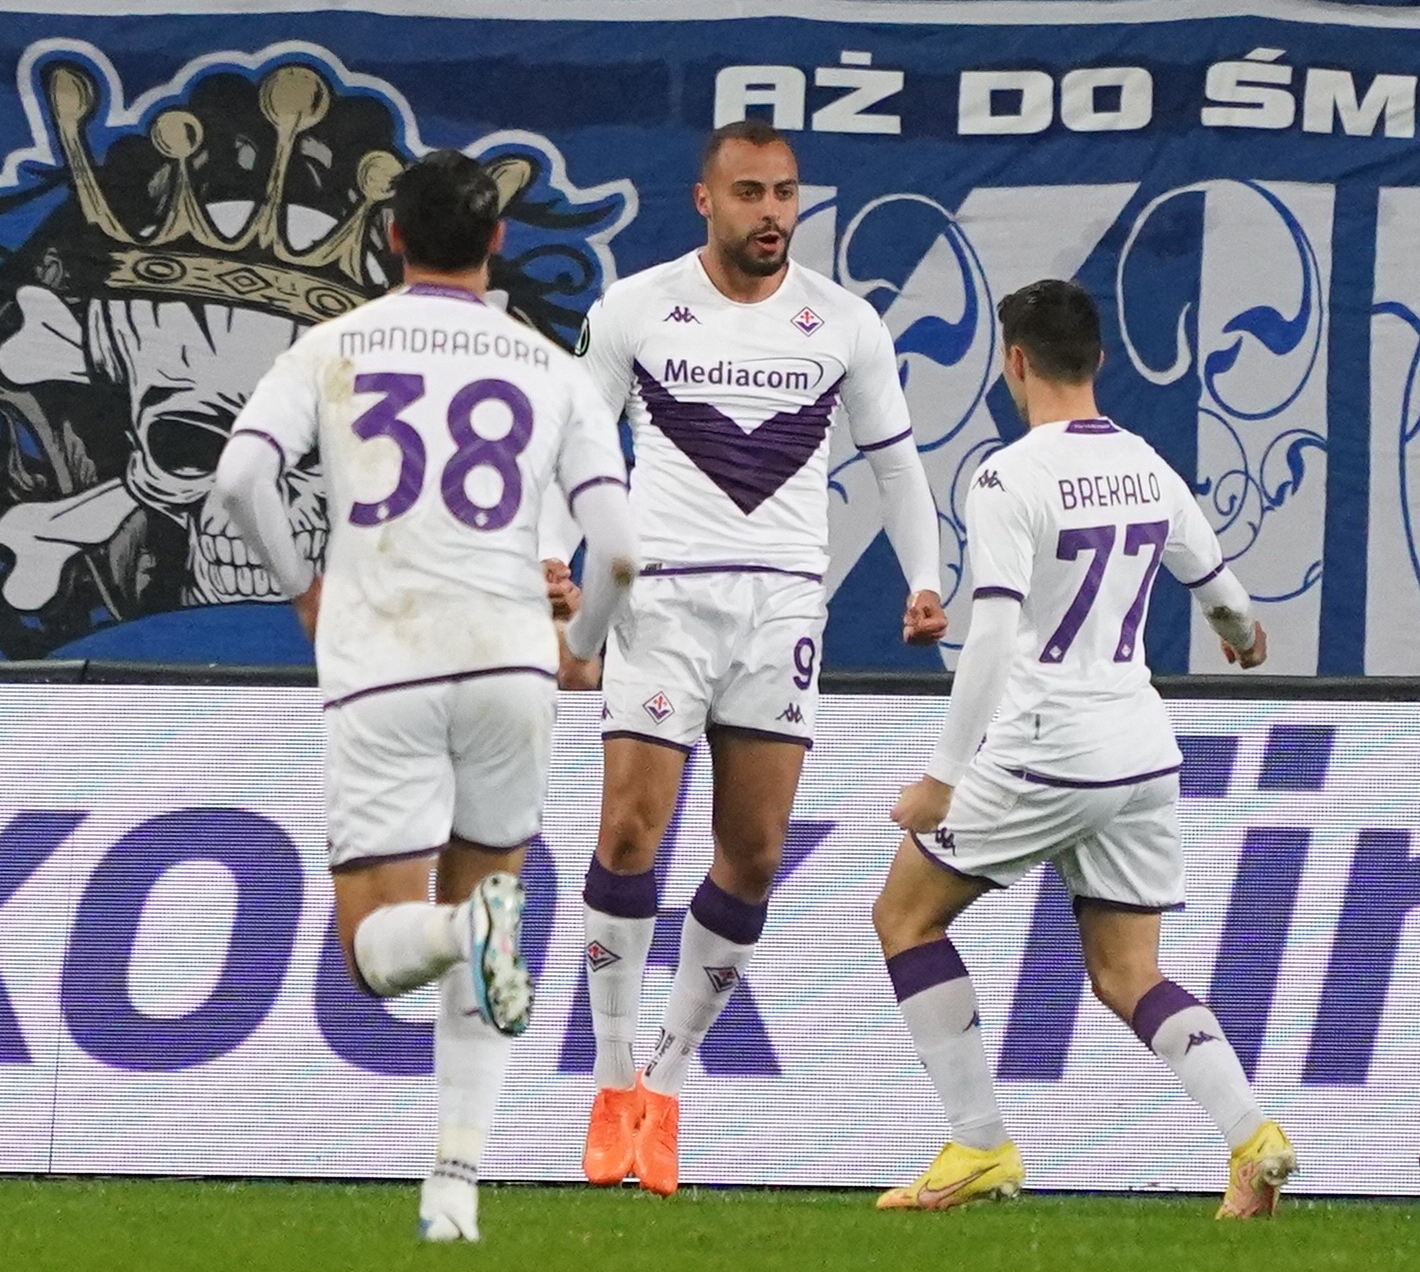 Grêmio vs São Luiz: A Clash of Titans in the Gauchão